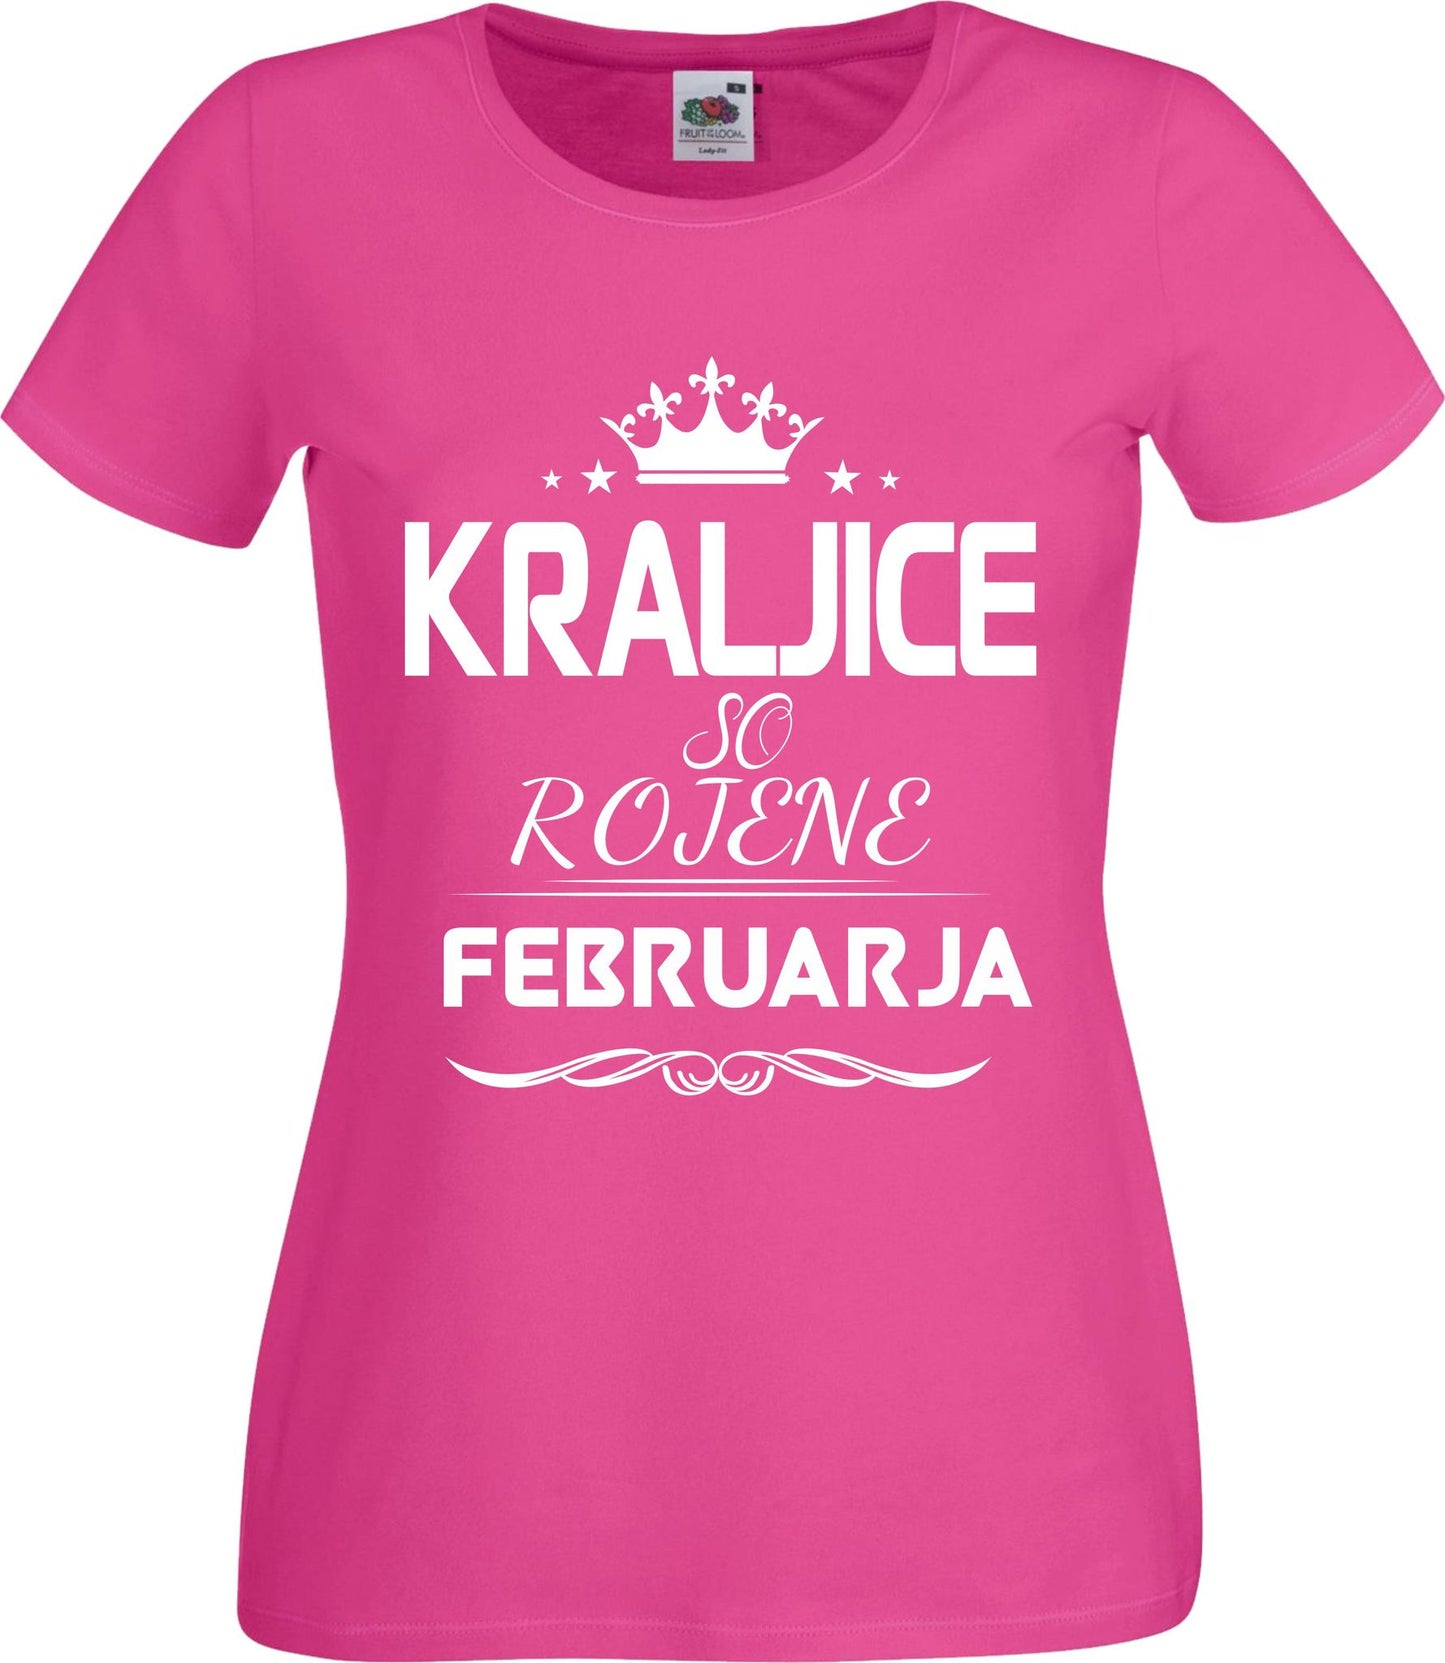 Outlet Majica Kraljice So Rojene - Februar